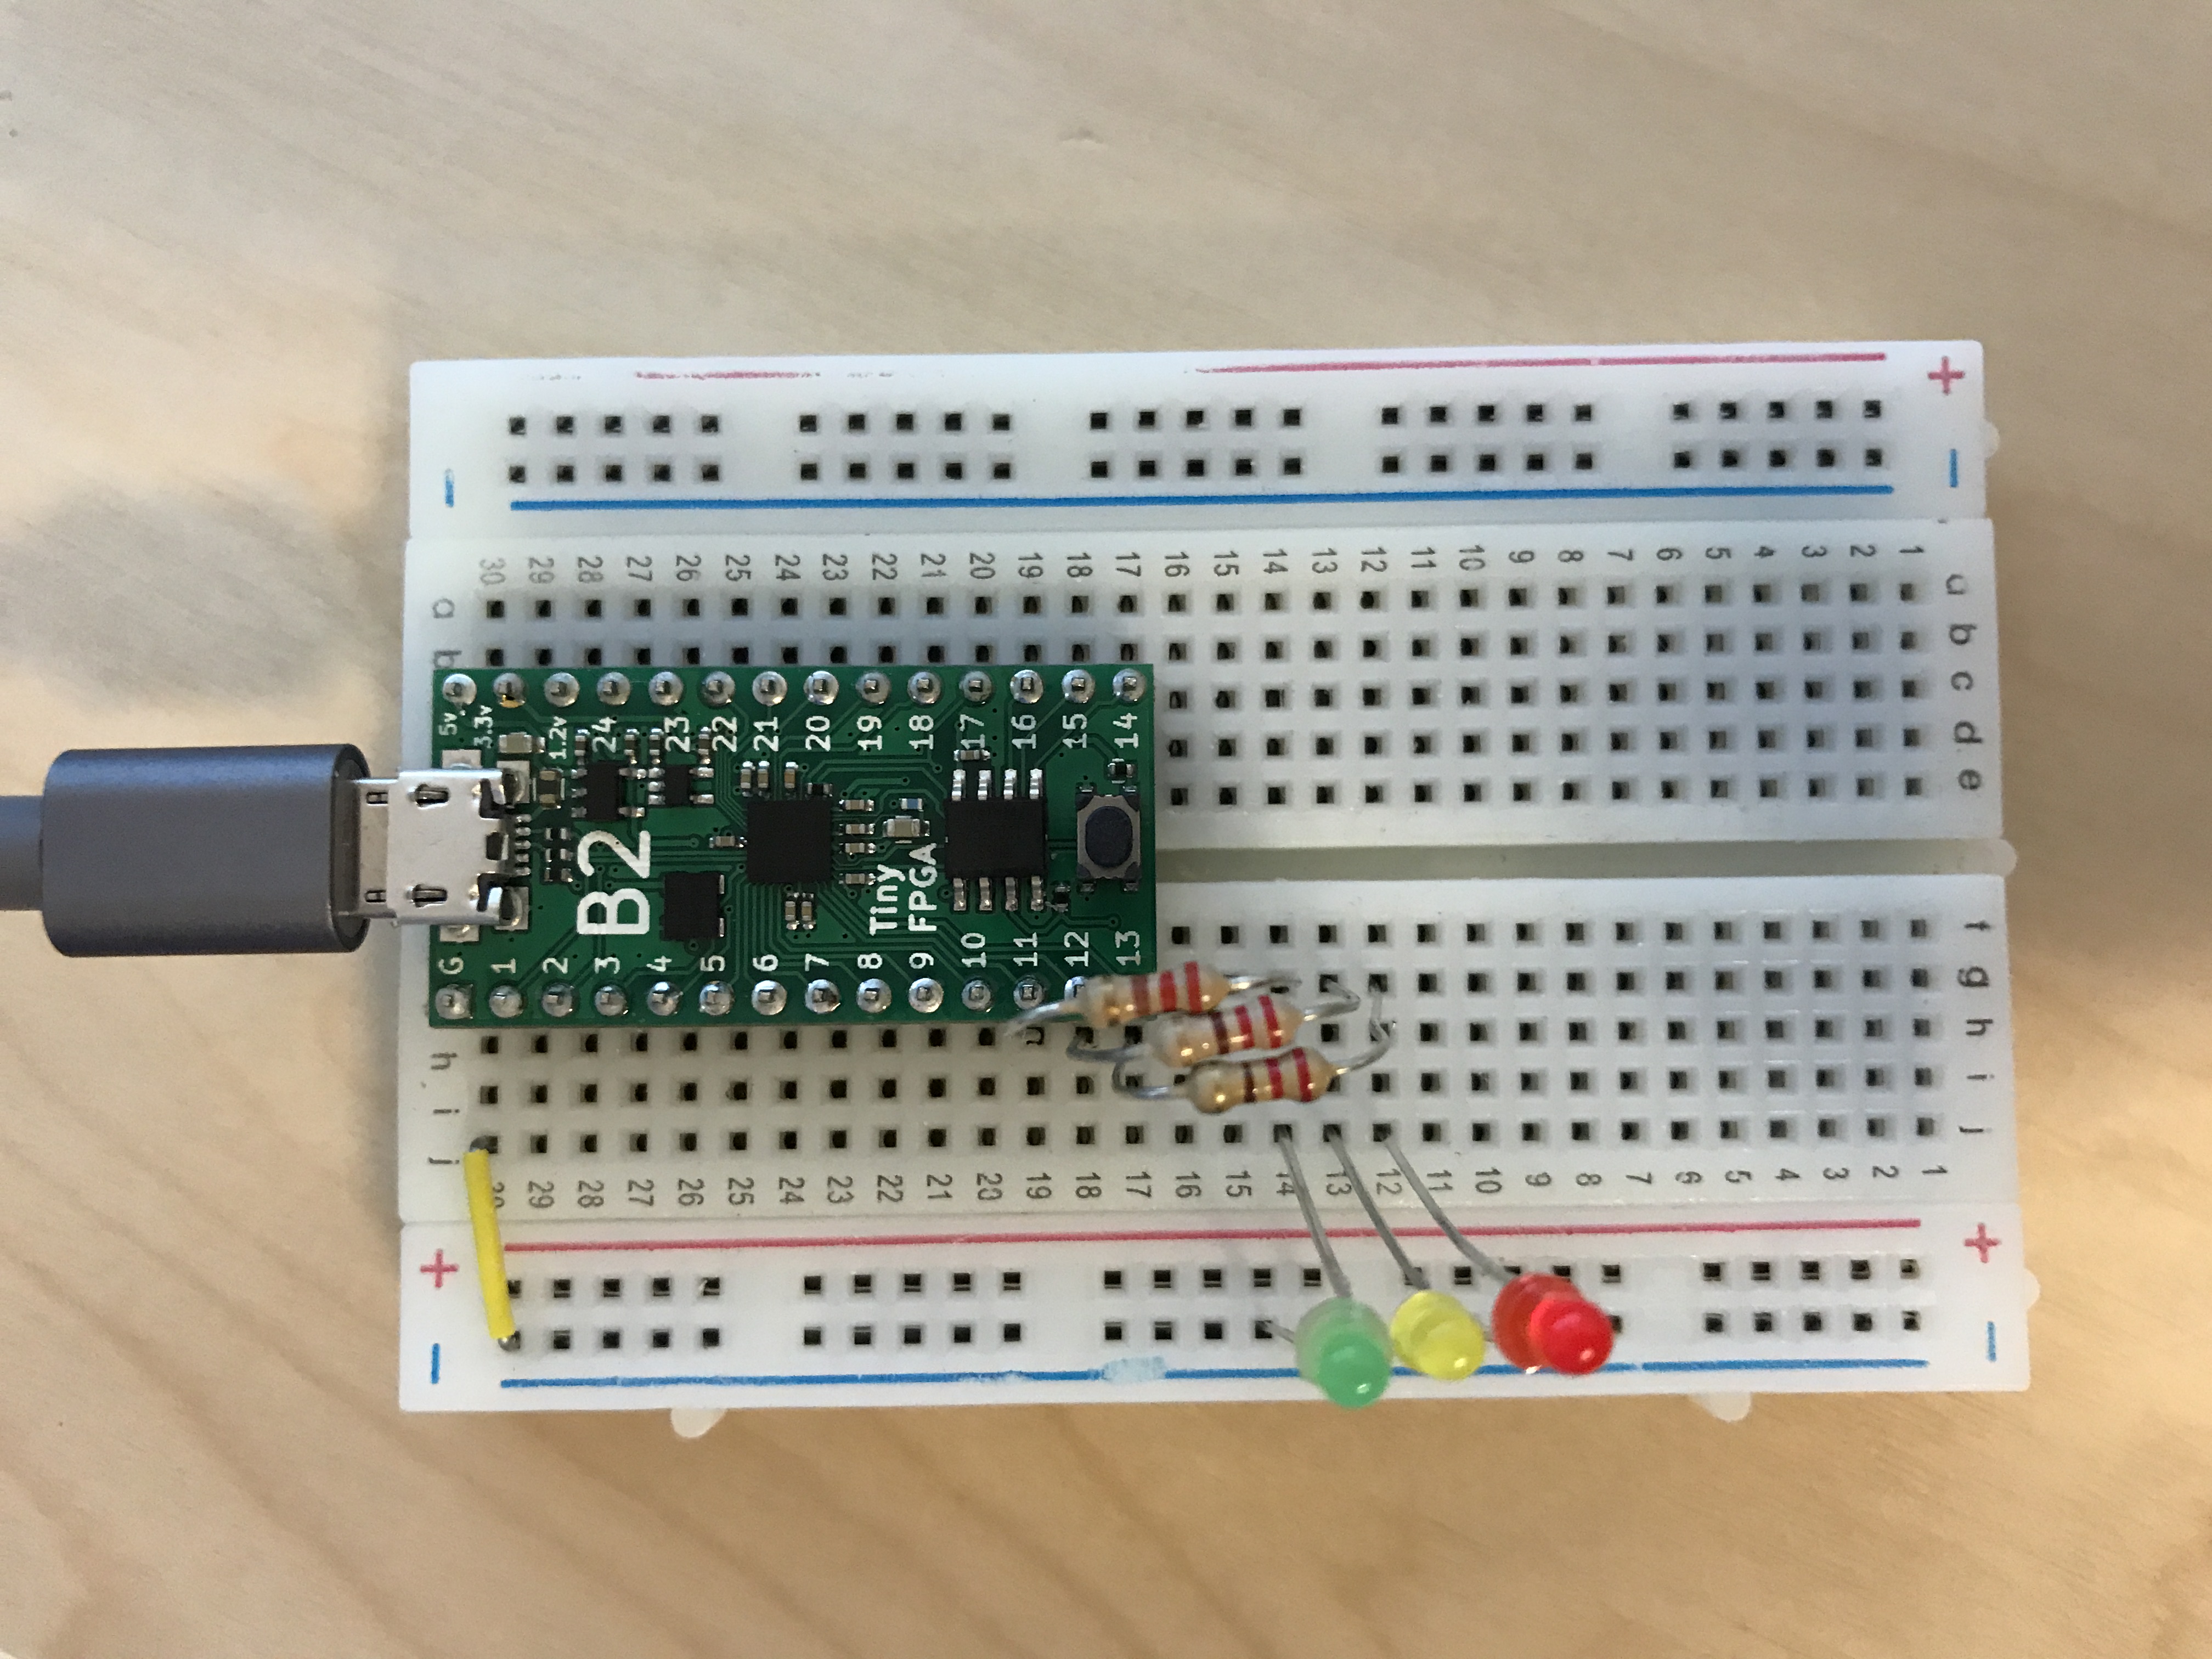 TinyFPGA blinker circuit